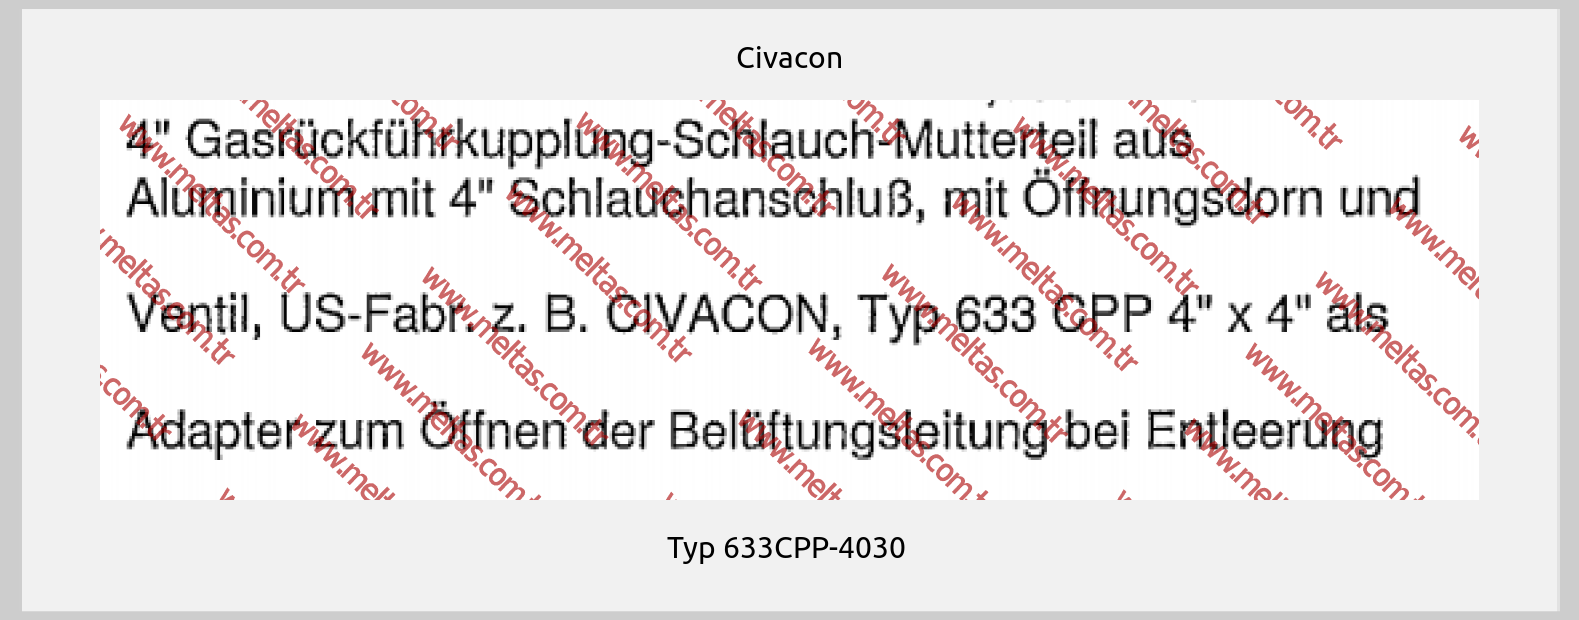 Civacon - Typ 633CPP-4030 